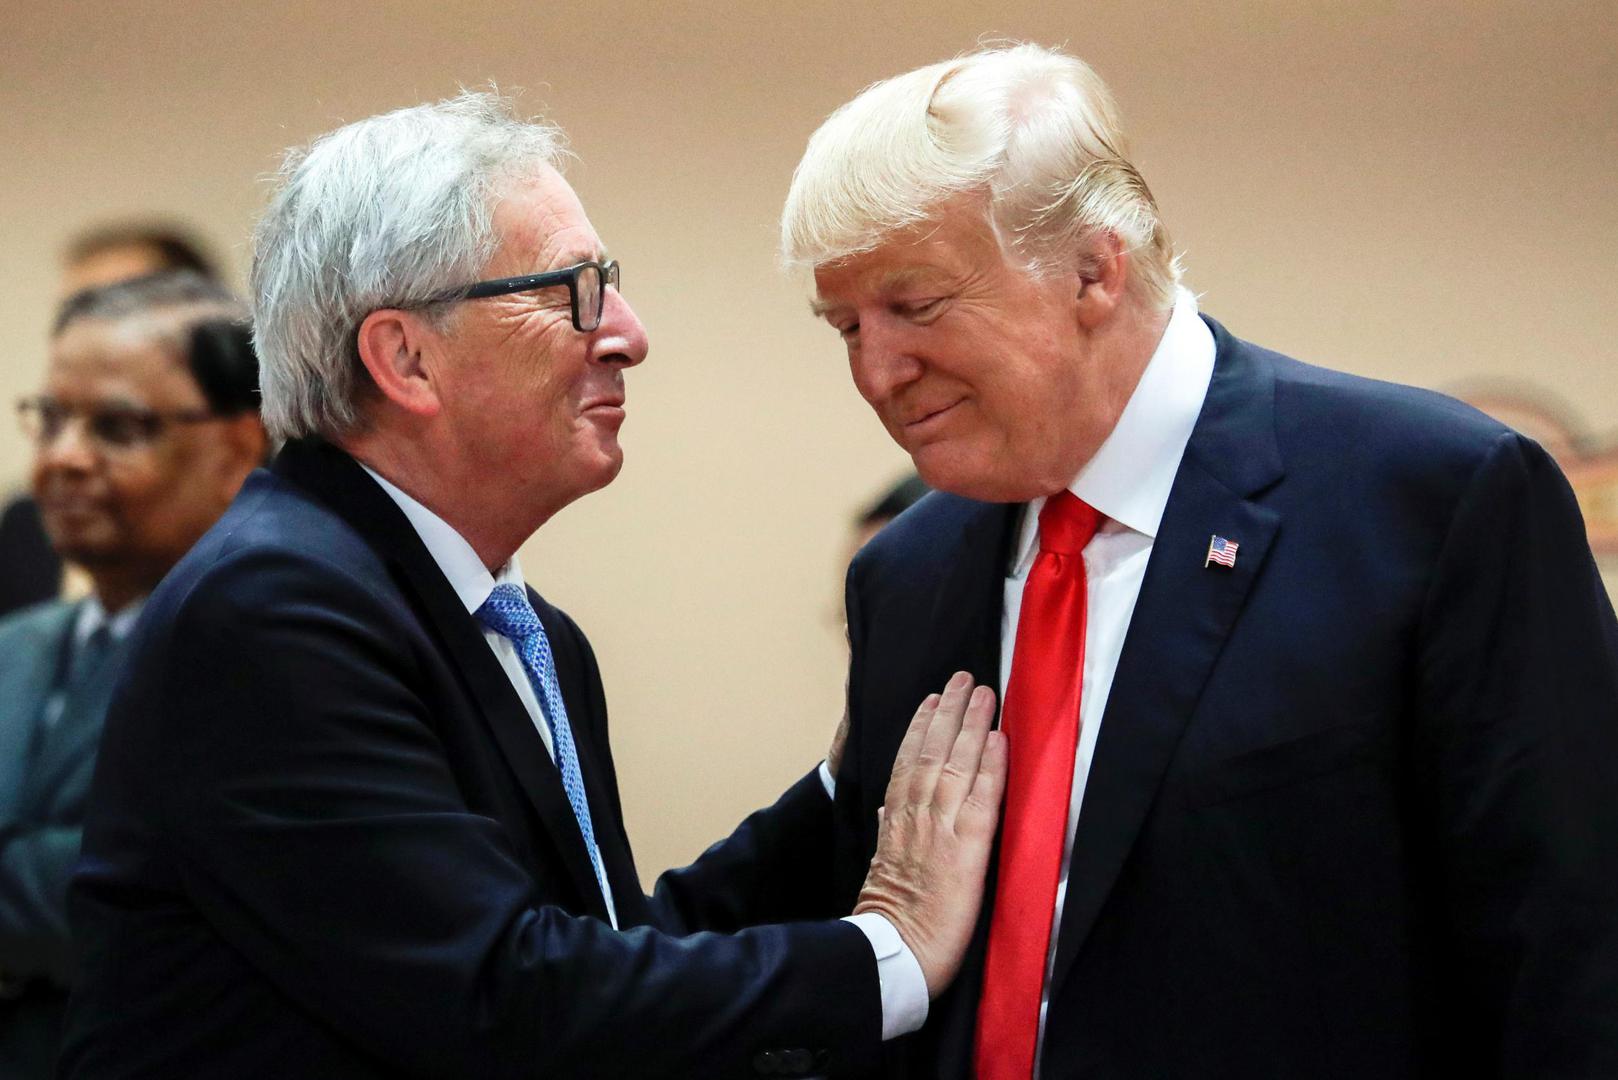 Čelnik Europske komisije na odlasku morao je protumjerama odgovoriti američkome predsjedniku koji carinama želi ojačati američki položaj u svijetu kojega sve više ugrožava Kina